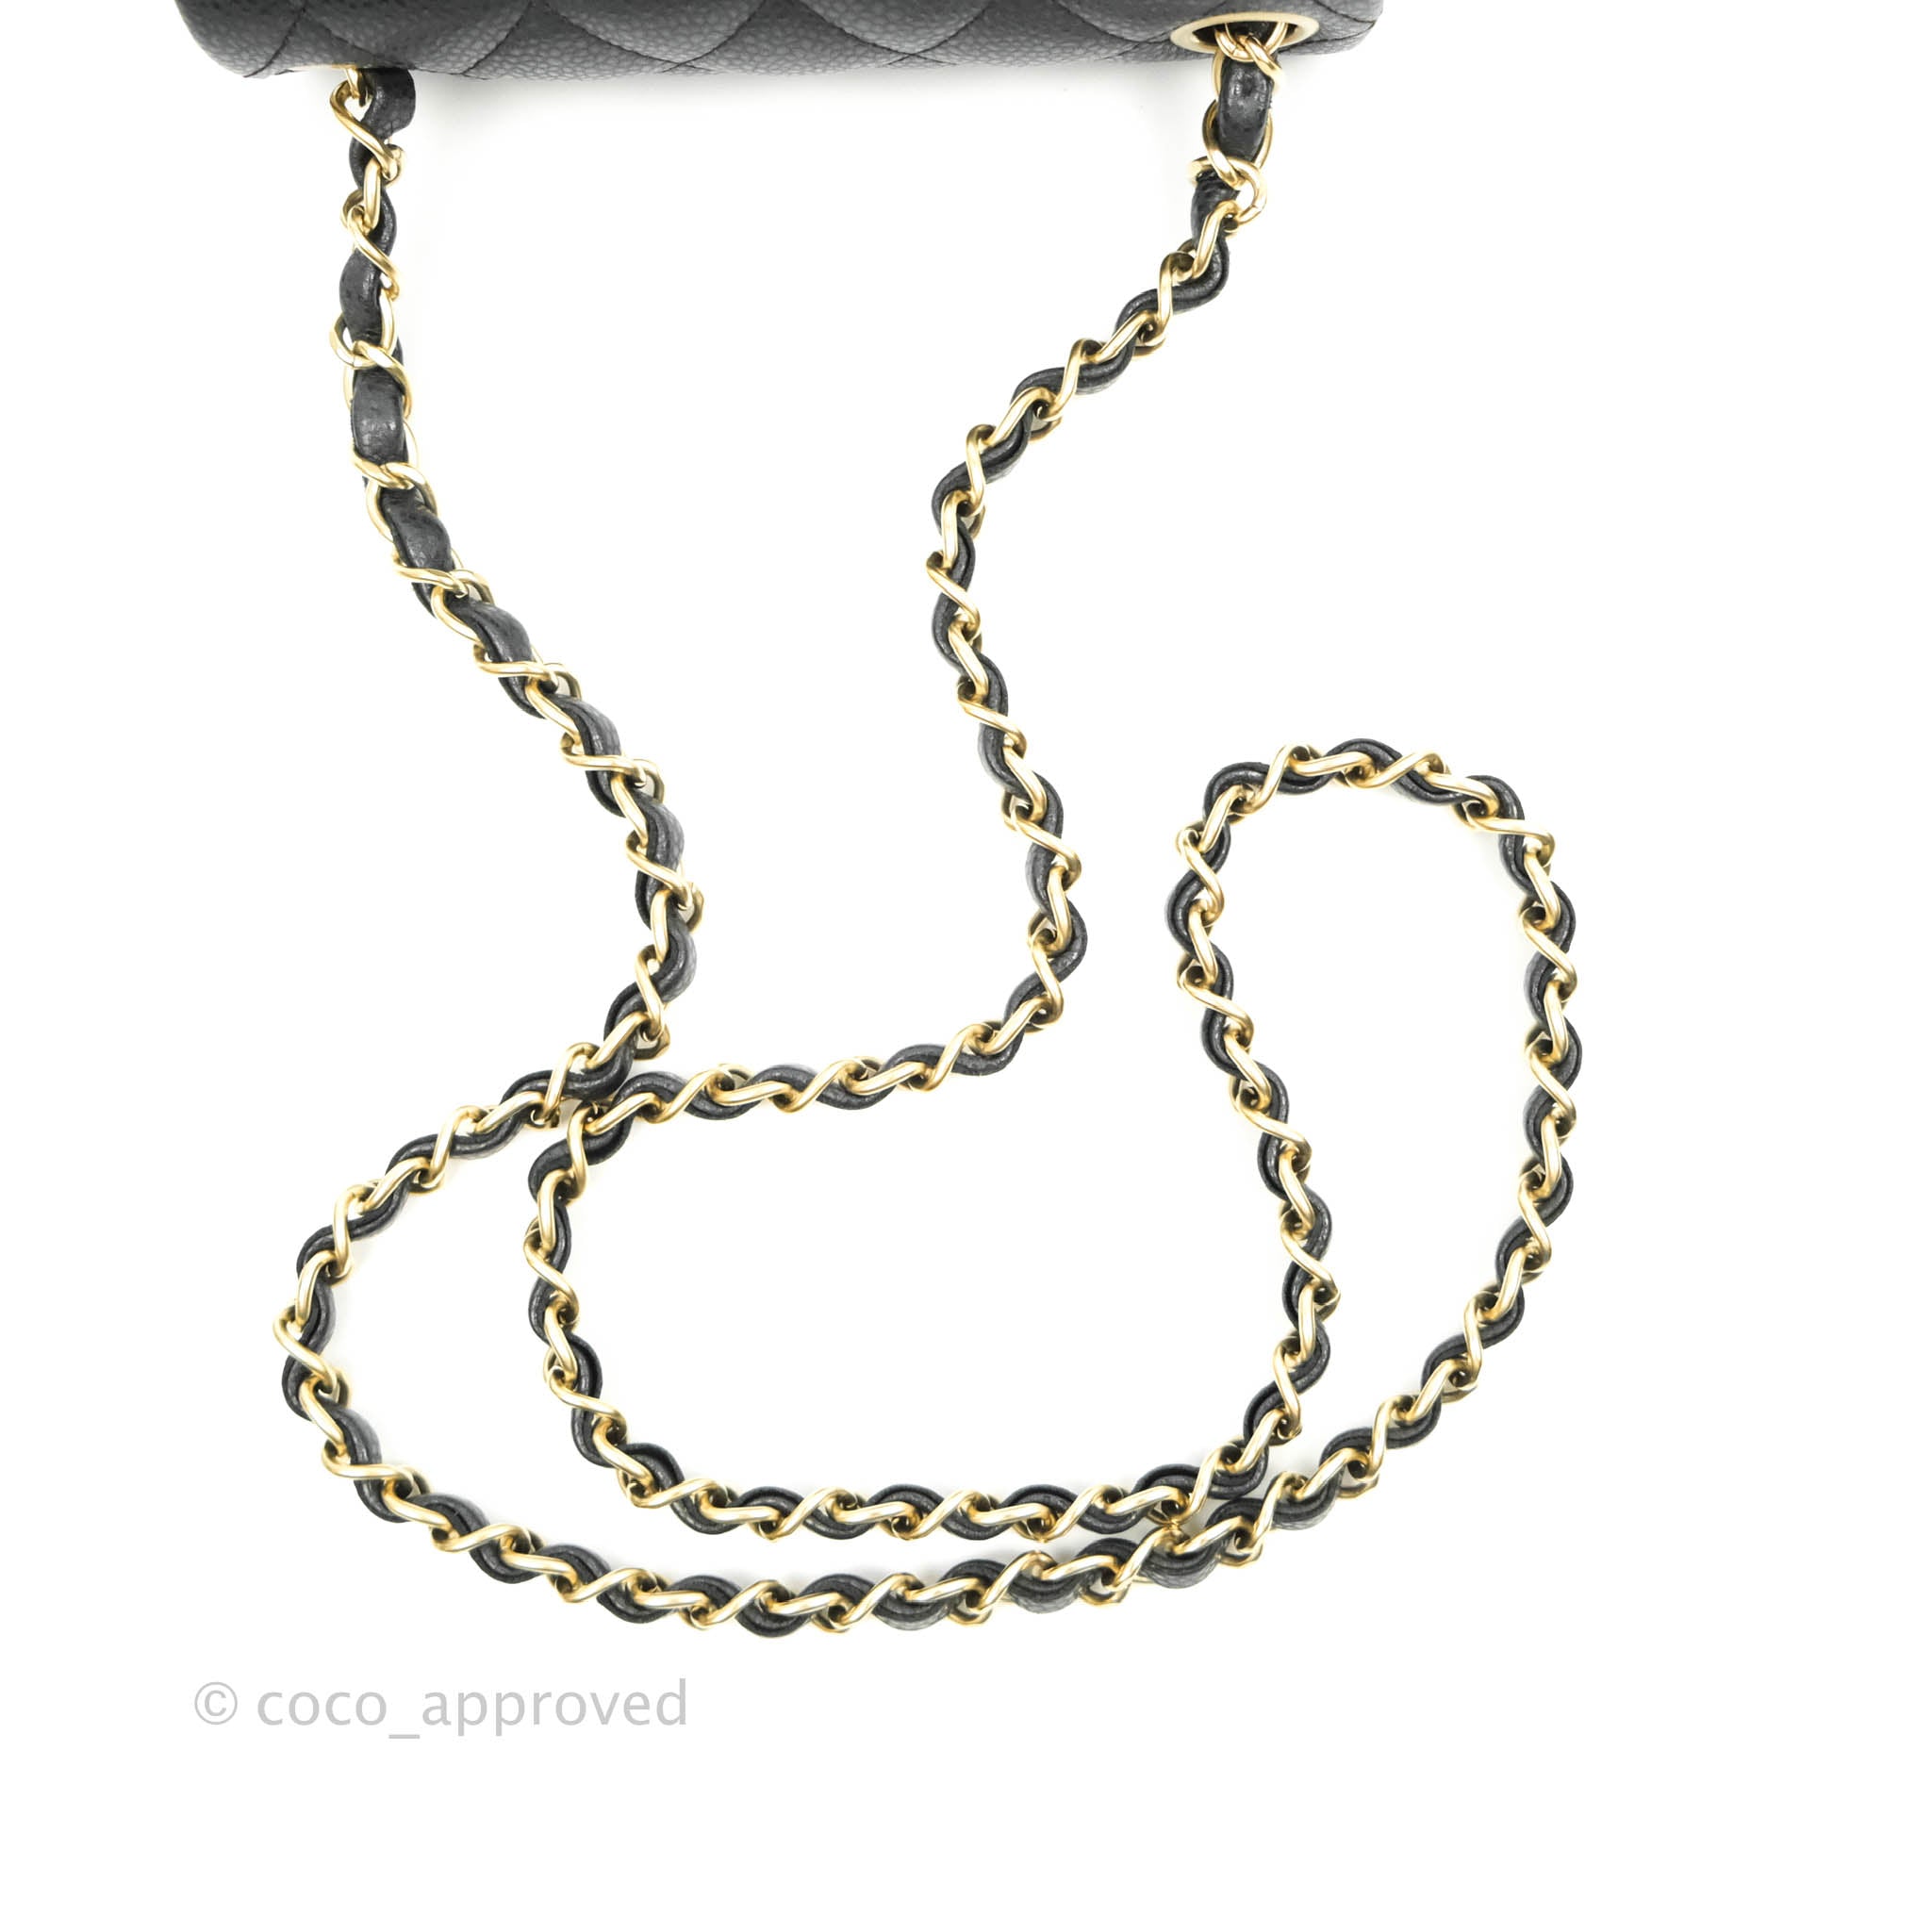 NEW Chanel Mini Square Black Classic Caviar Medallion Gold Chain